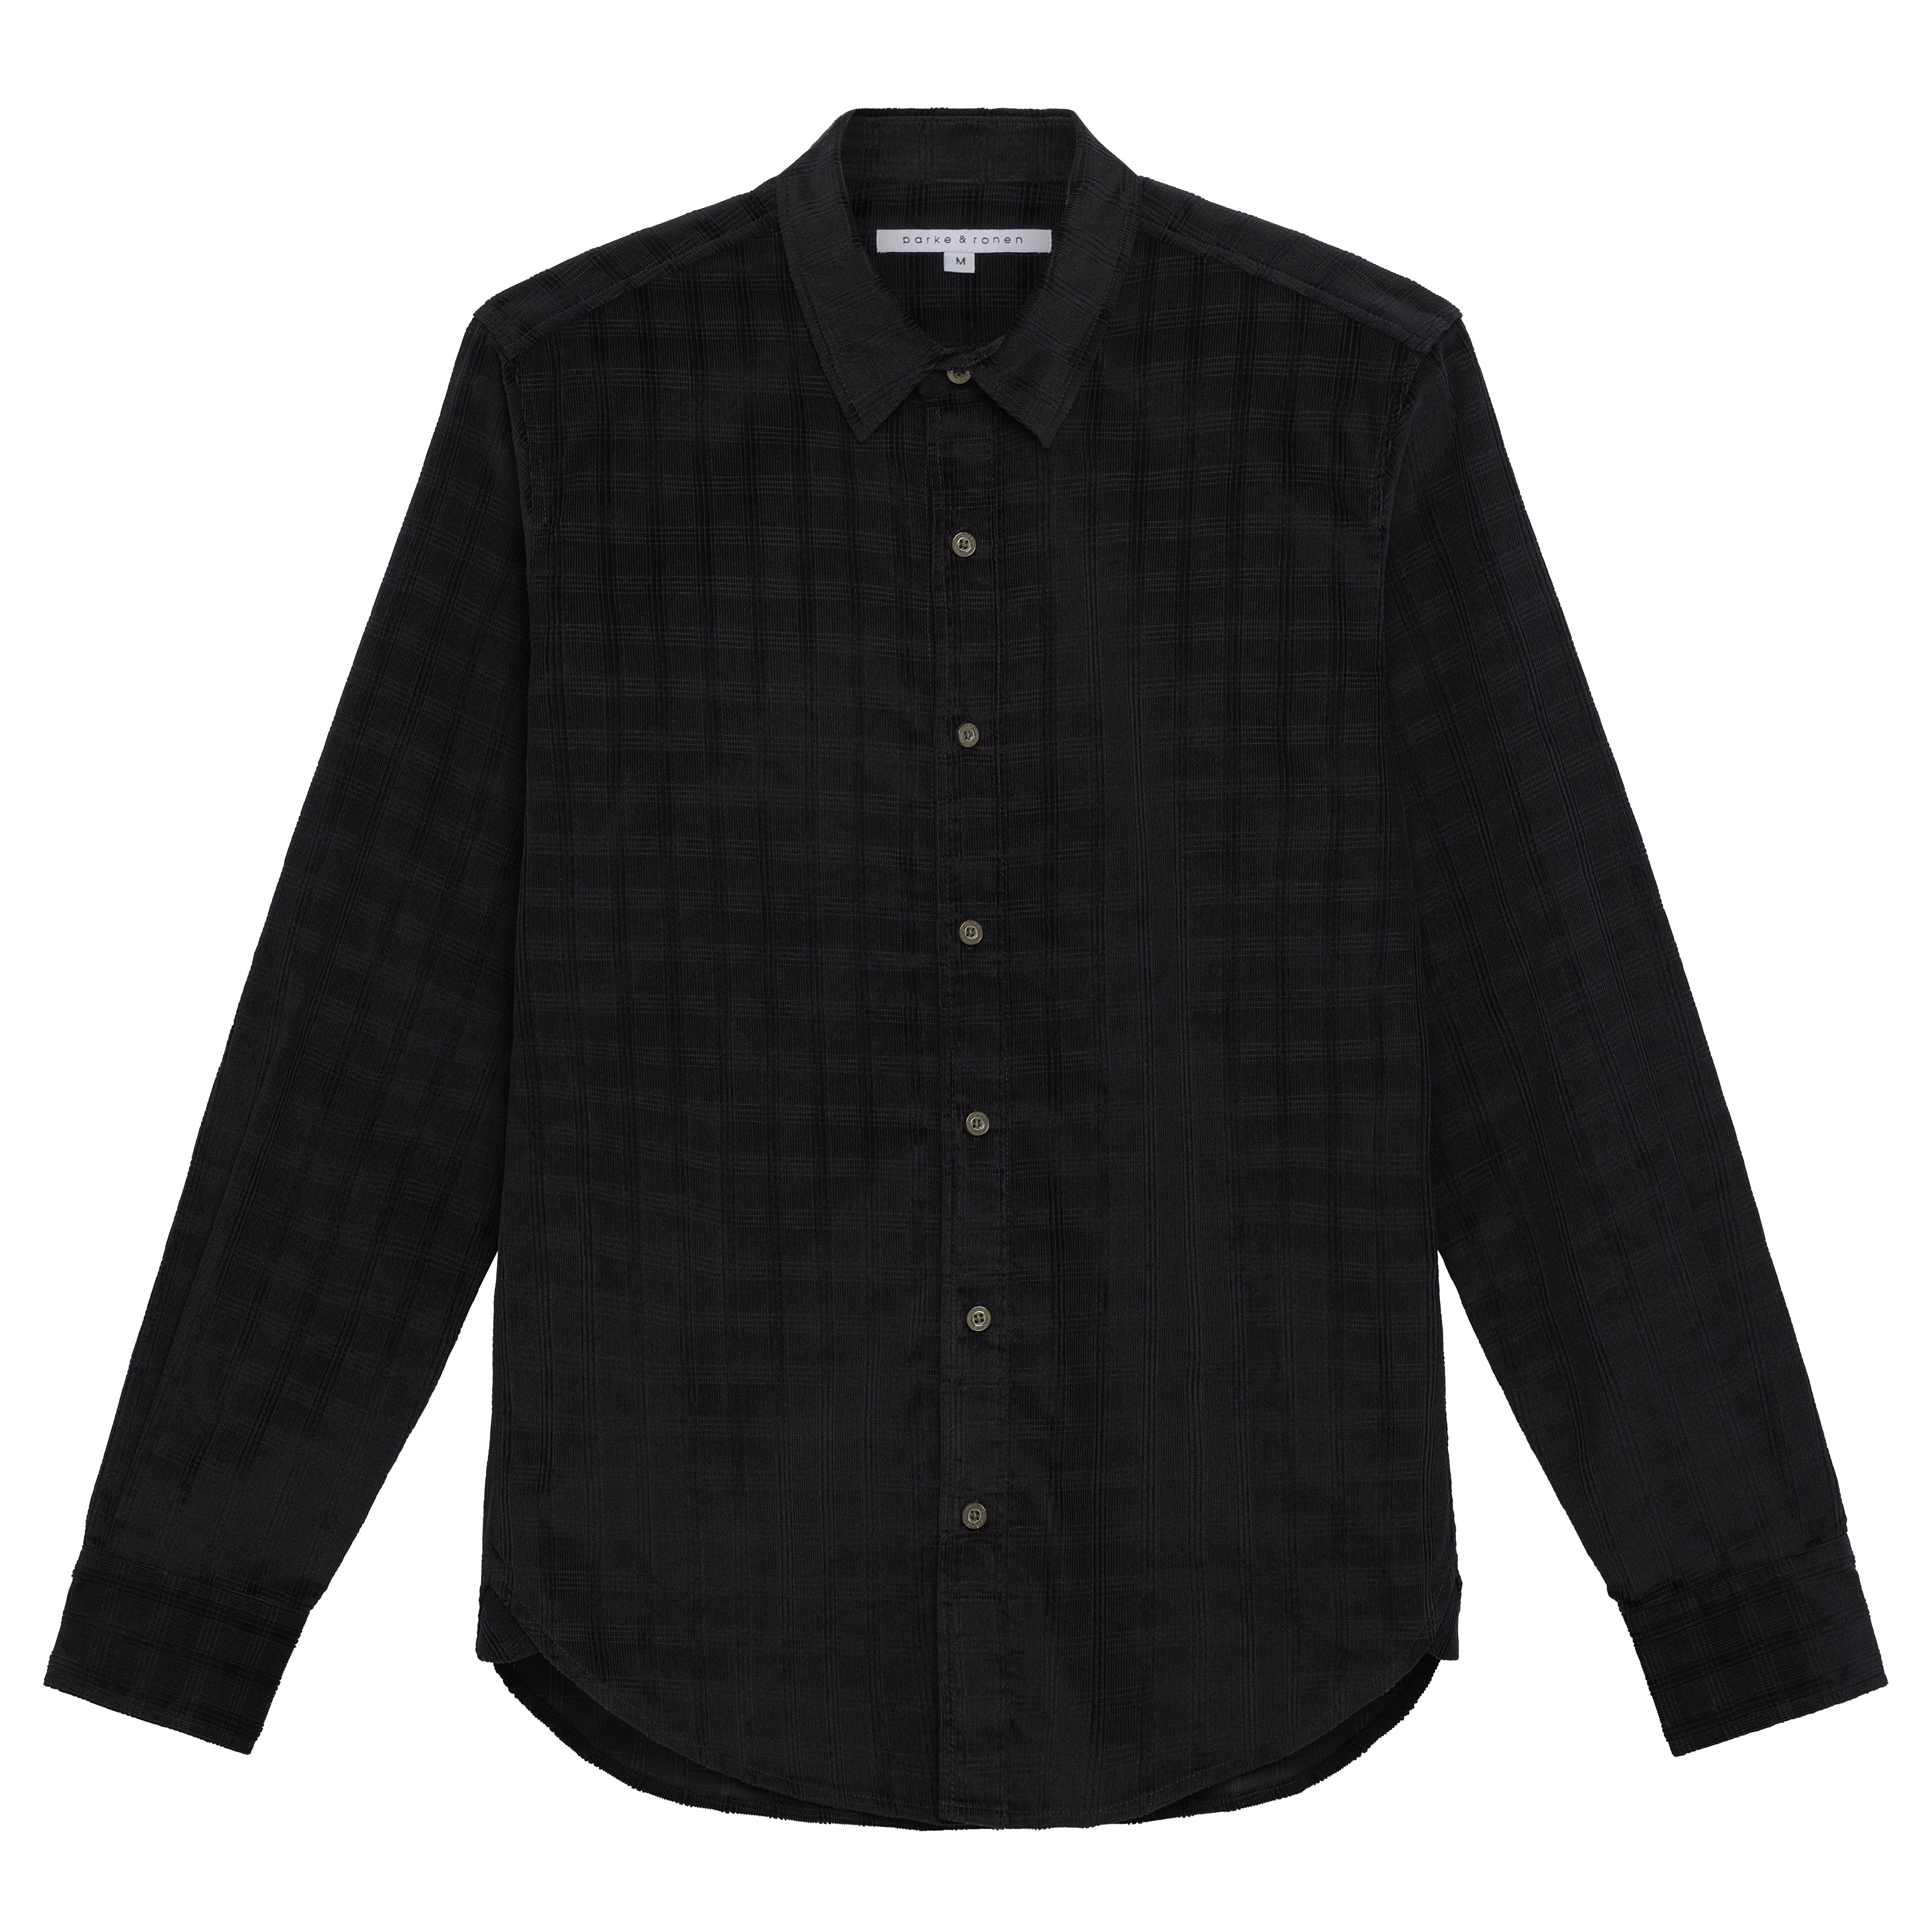 NEW- Black Corduroy Check Shirt